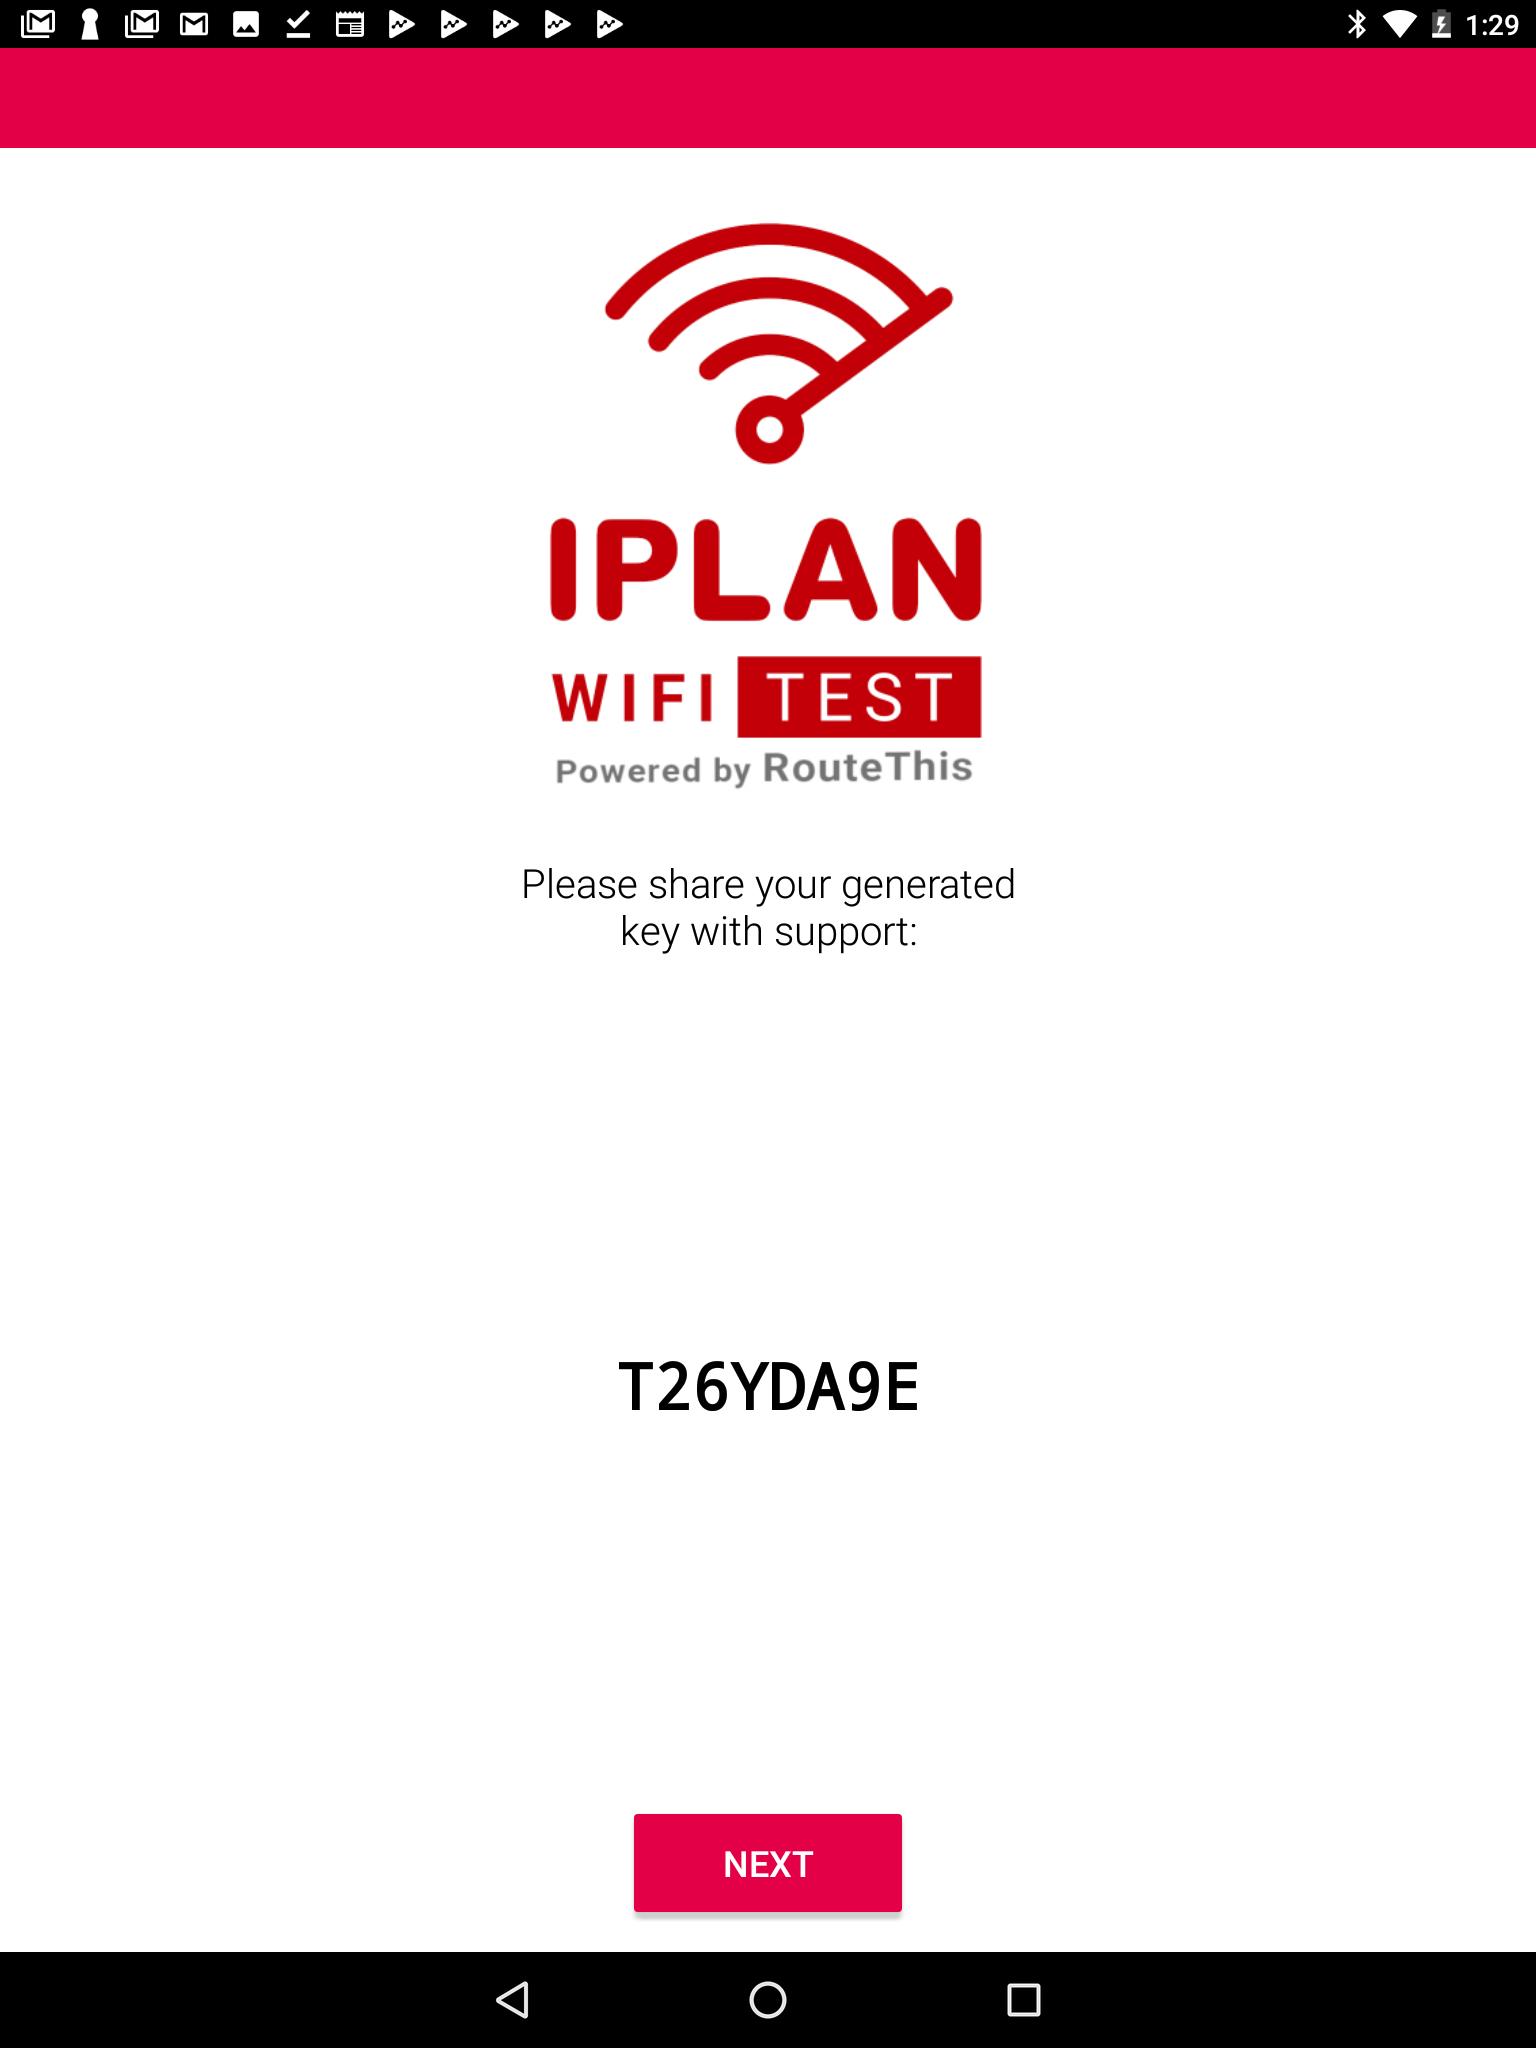 IPLAN WIFI TEST 1.21.03.31 Screenshot 10